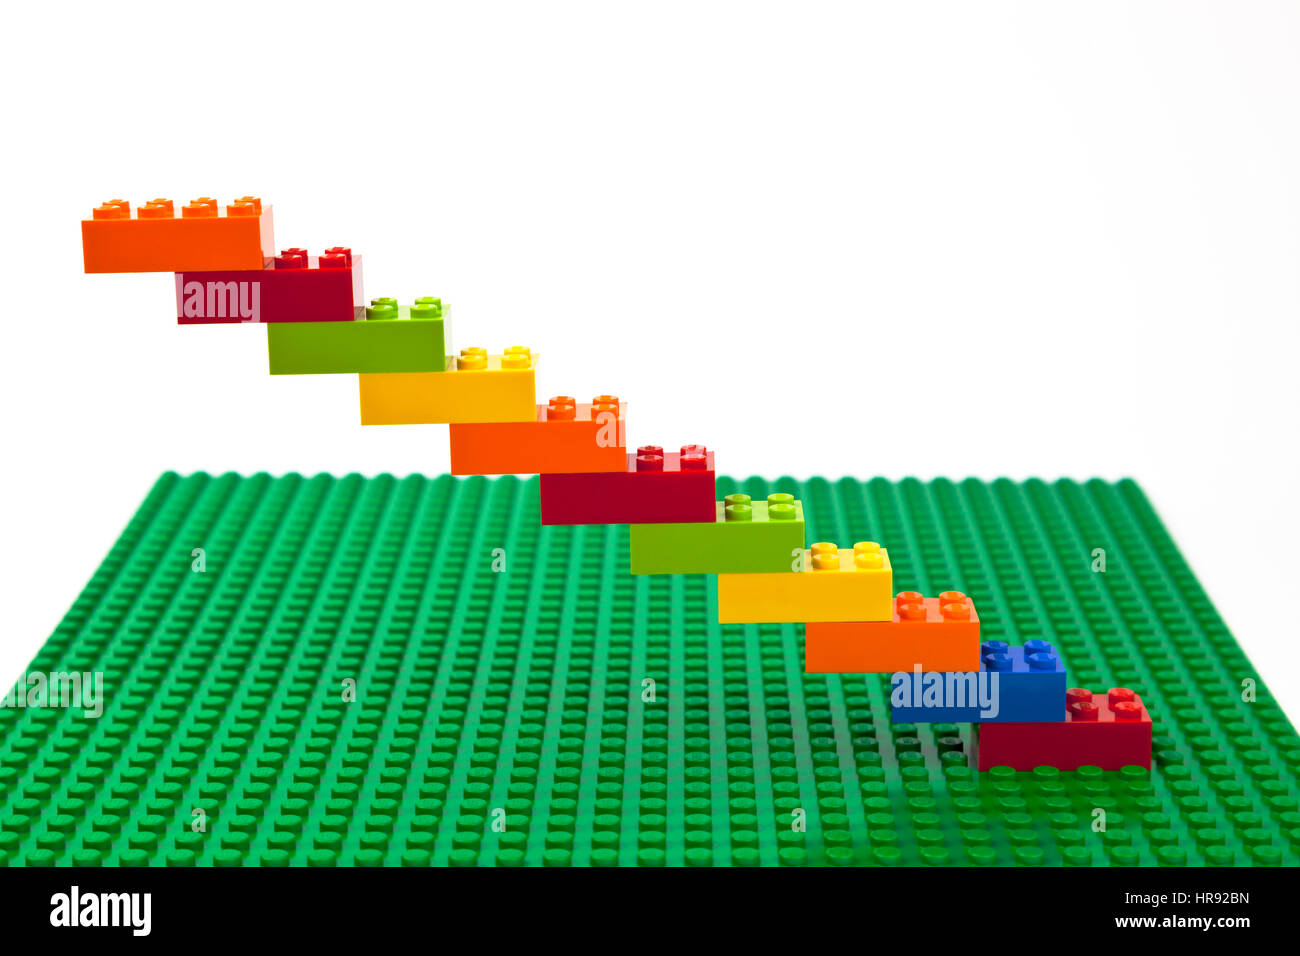 Construction brique Lego colorés d'escalier ou un dessin sur une plaque de base Lego vert. Banque D'Images